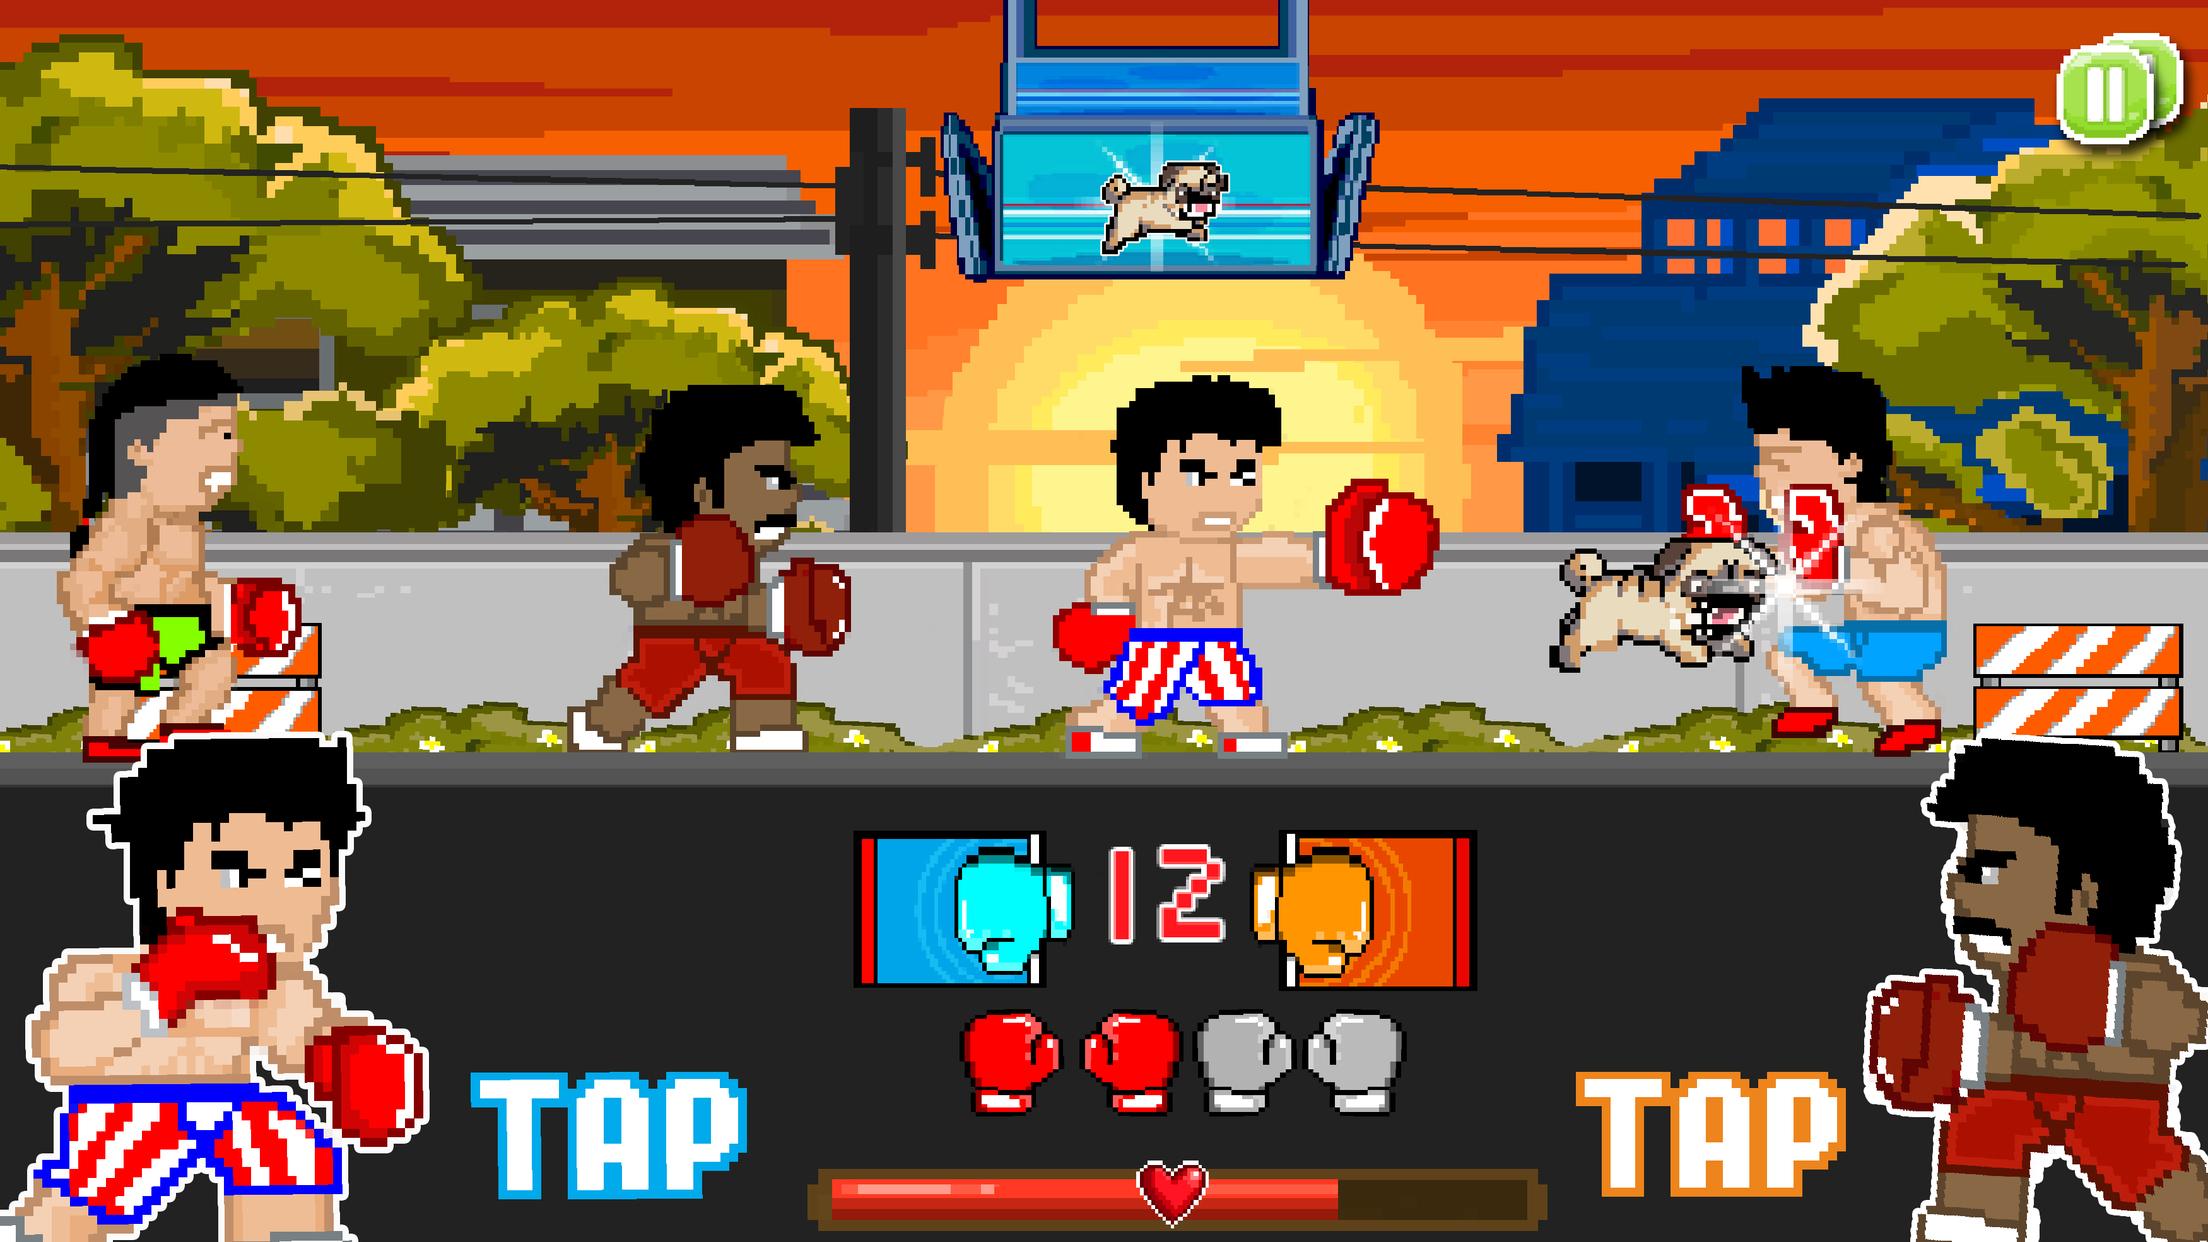 Игра бить телефоны. Пиксельная игра про бокс. Игра супер бойцы. Игра про боксера Punch. 8 Битная игра про боксера.